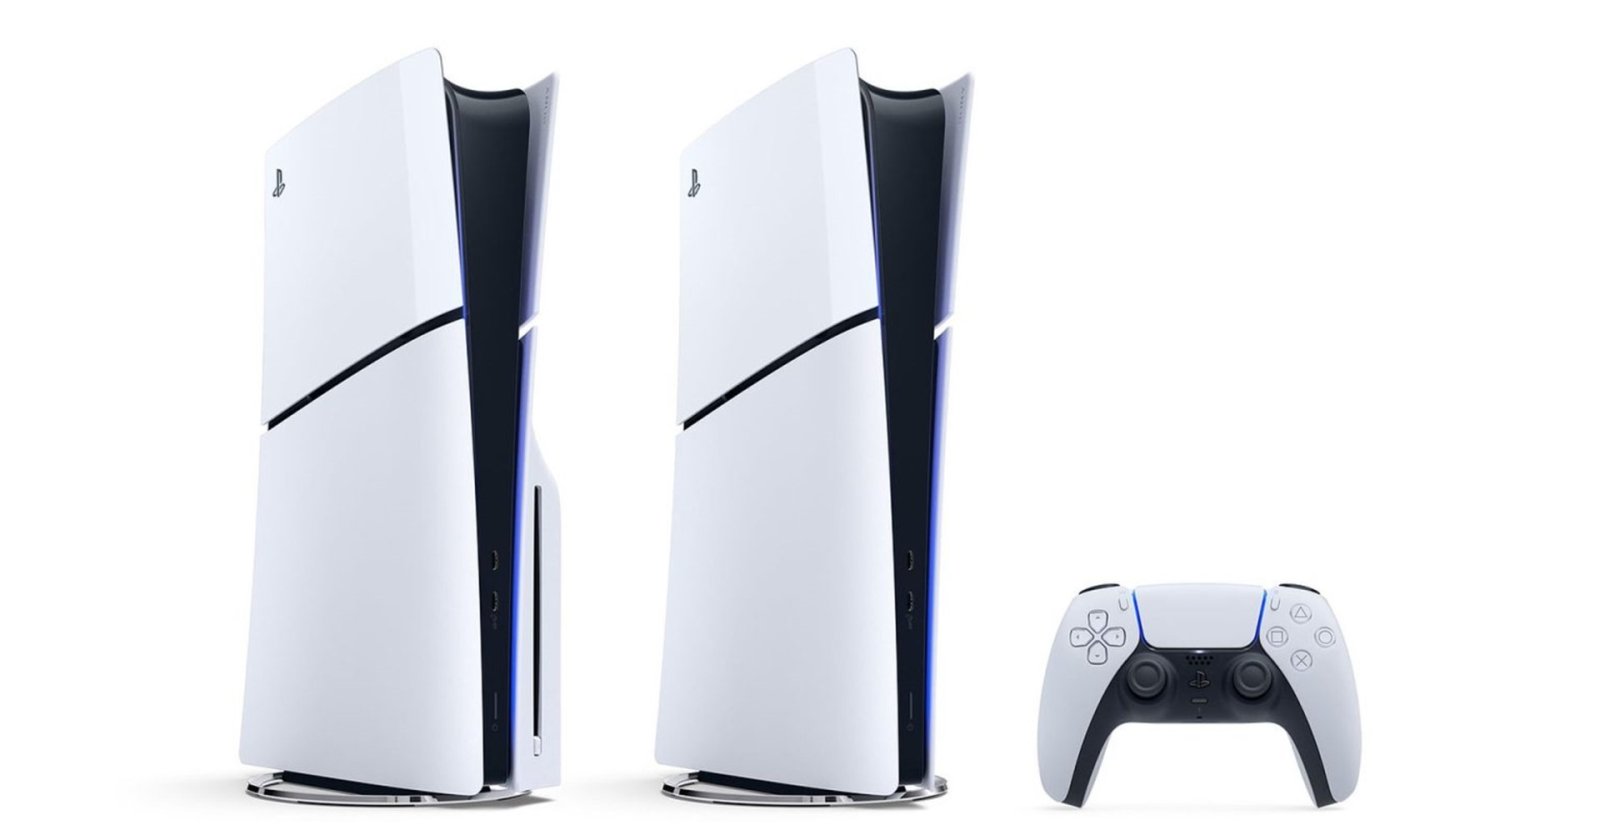 ราคาของ PlayStation 5 โฉมใหม่ โซนญี่ปุ่นมีราคาแพงกว่ารุ่นเดิม